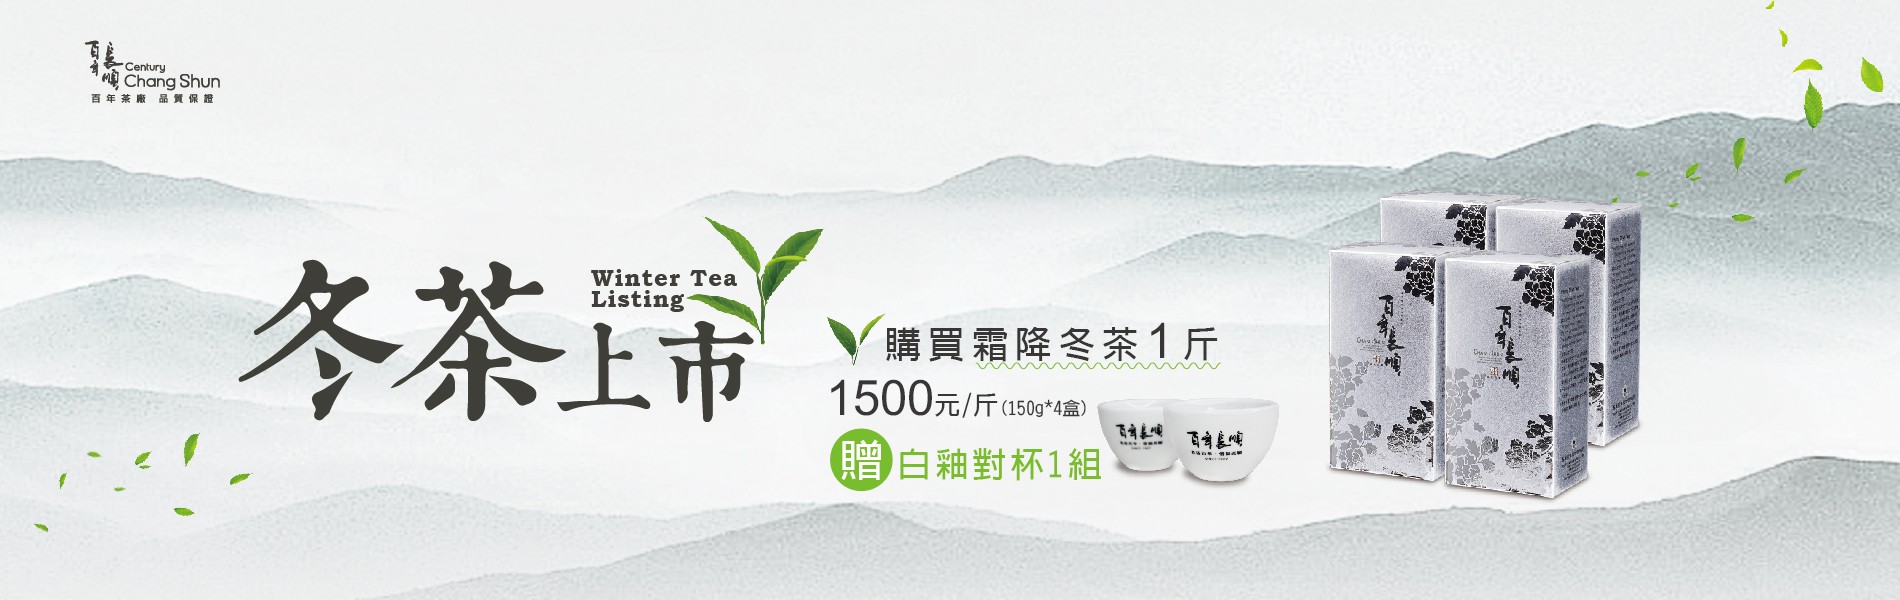 購買霜降冬茶1斤 優惠價1500 贈白釉對杯1組